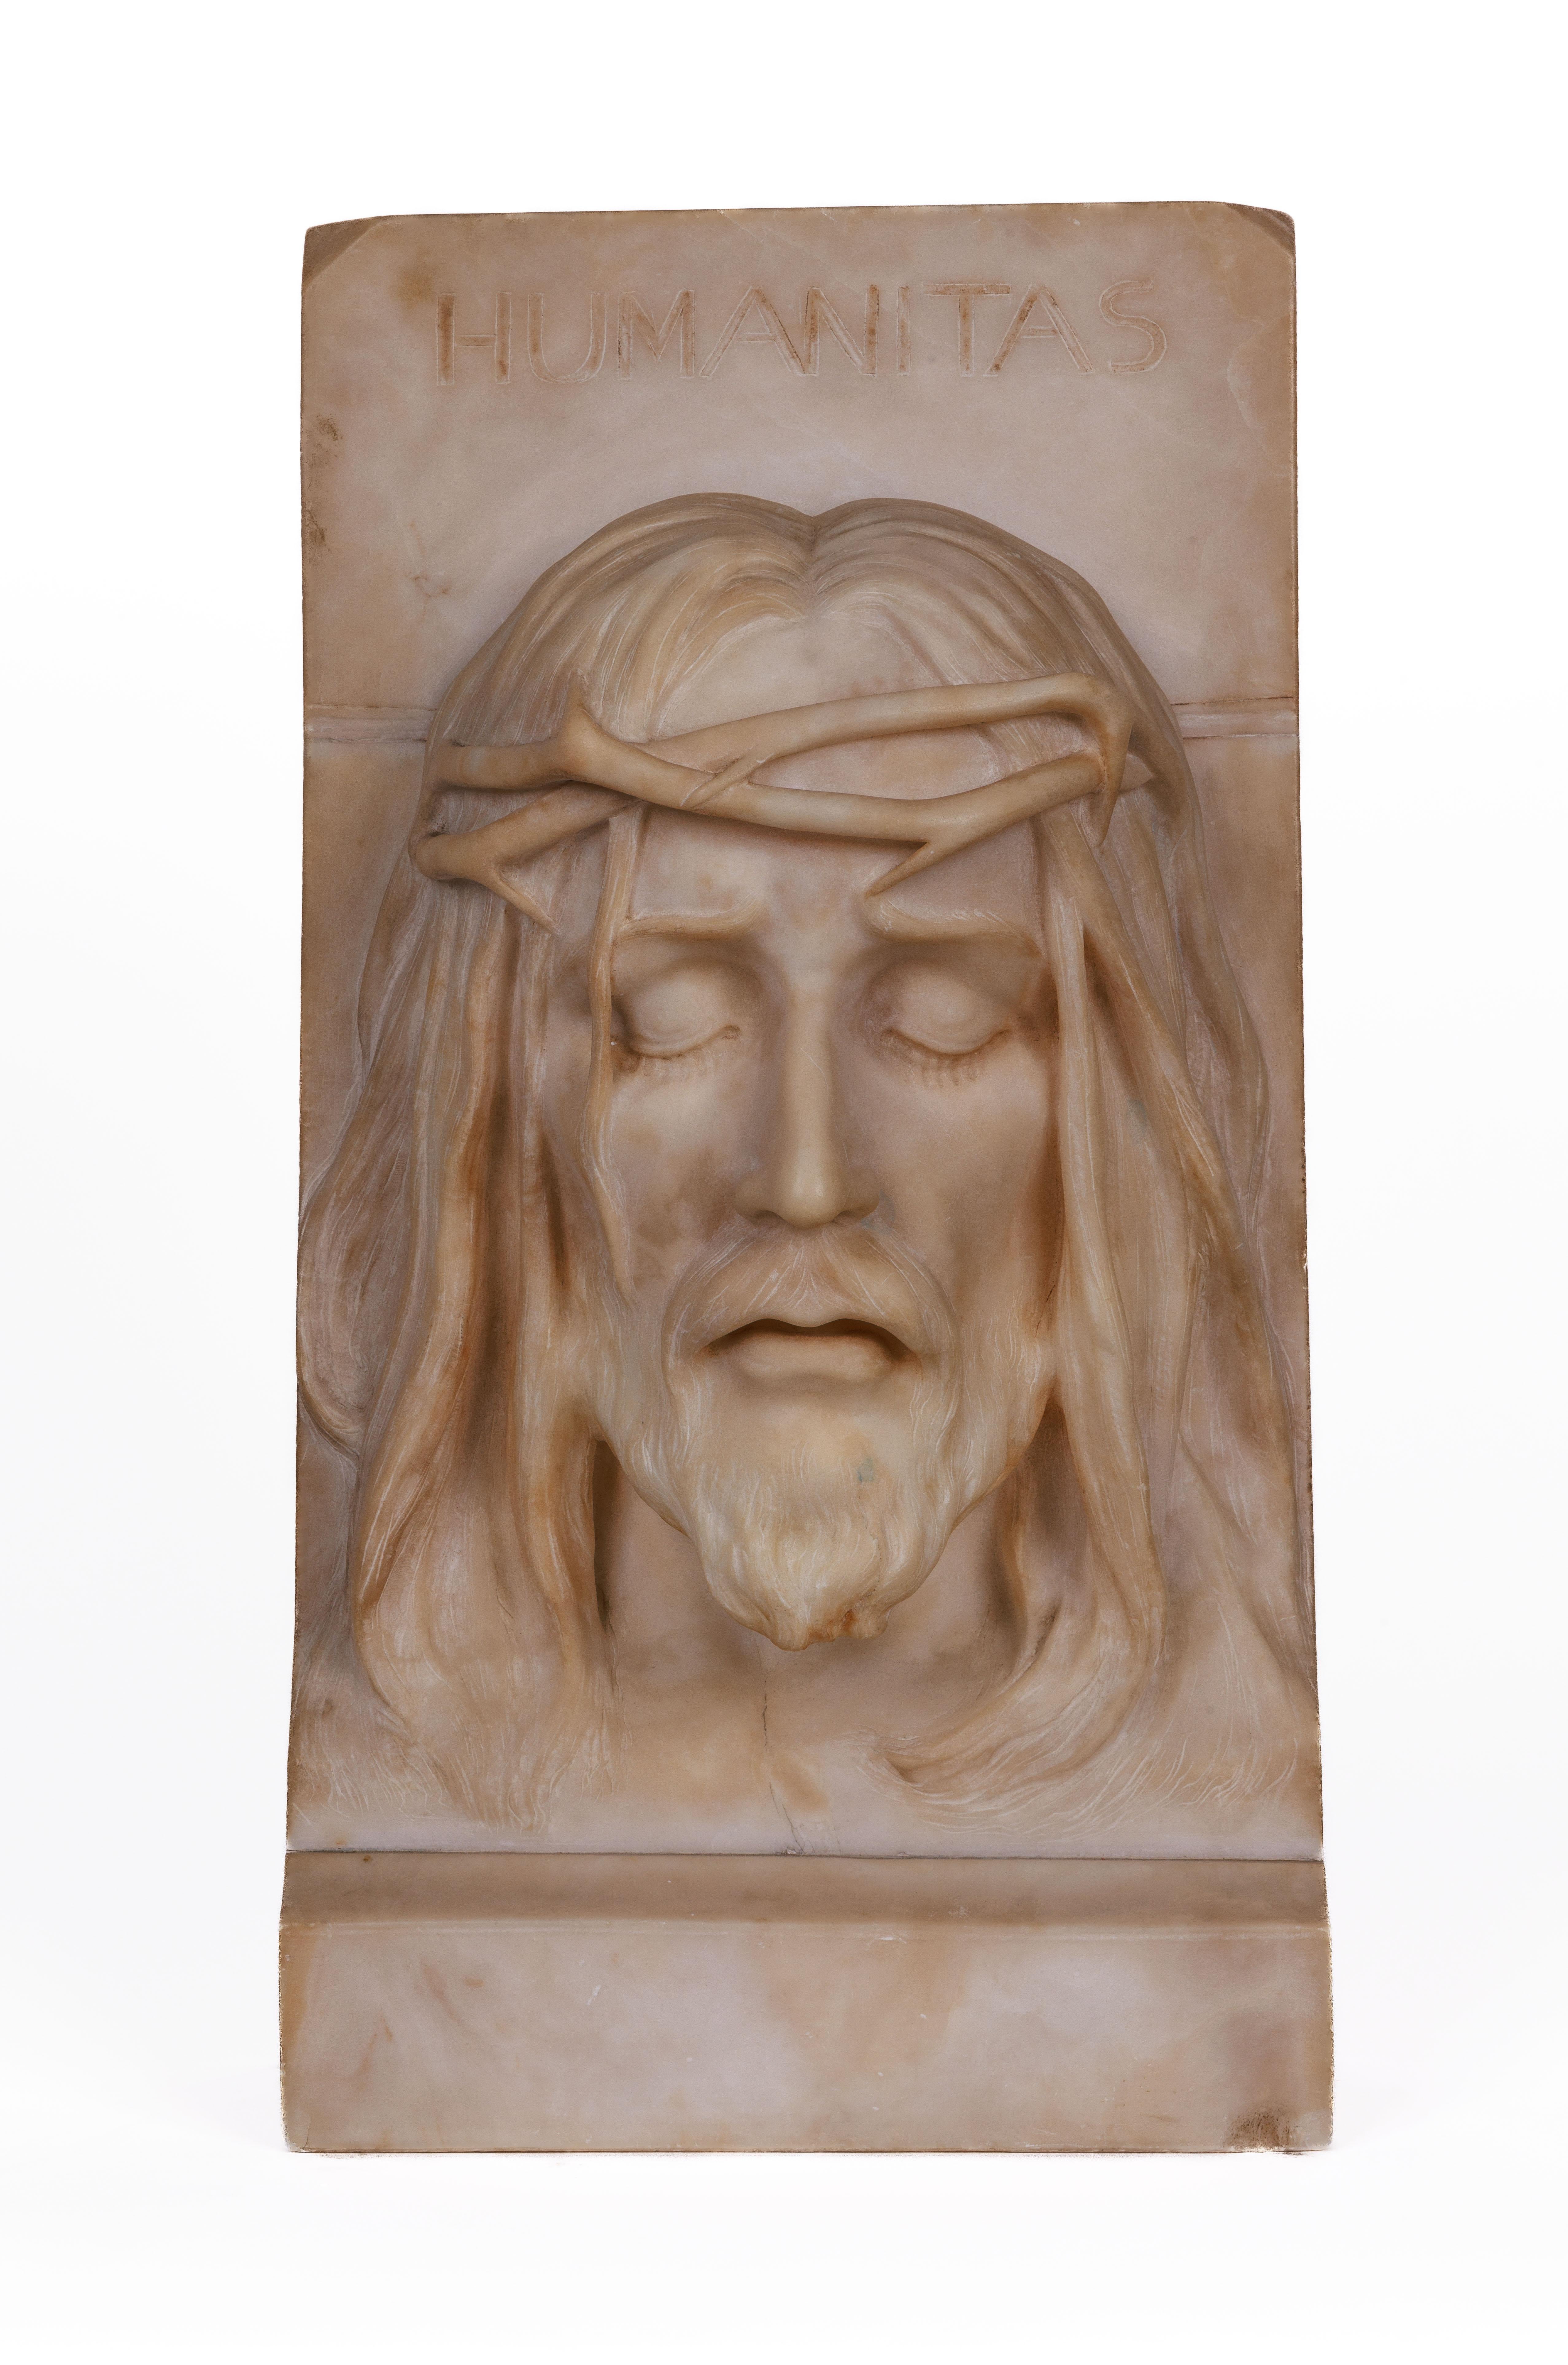 Rare et important buste en albâtre italien représentant Jésus Christ, C.C. 1860

Buste modelé du Saint Christ portant une couronne d'épines, sculpté à la main de manière exceptionnelle et réaliste à Rome vers 1860 et portant l'inscription